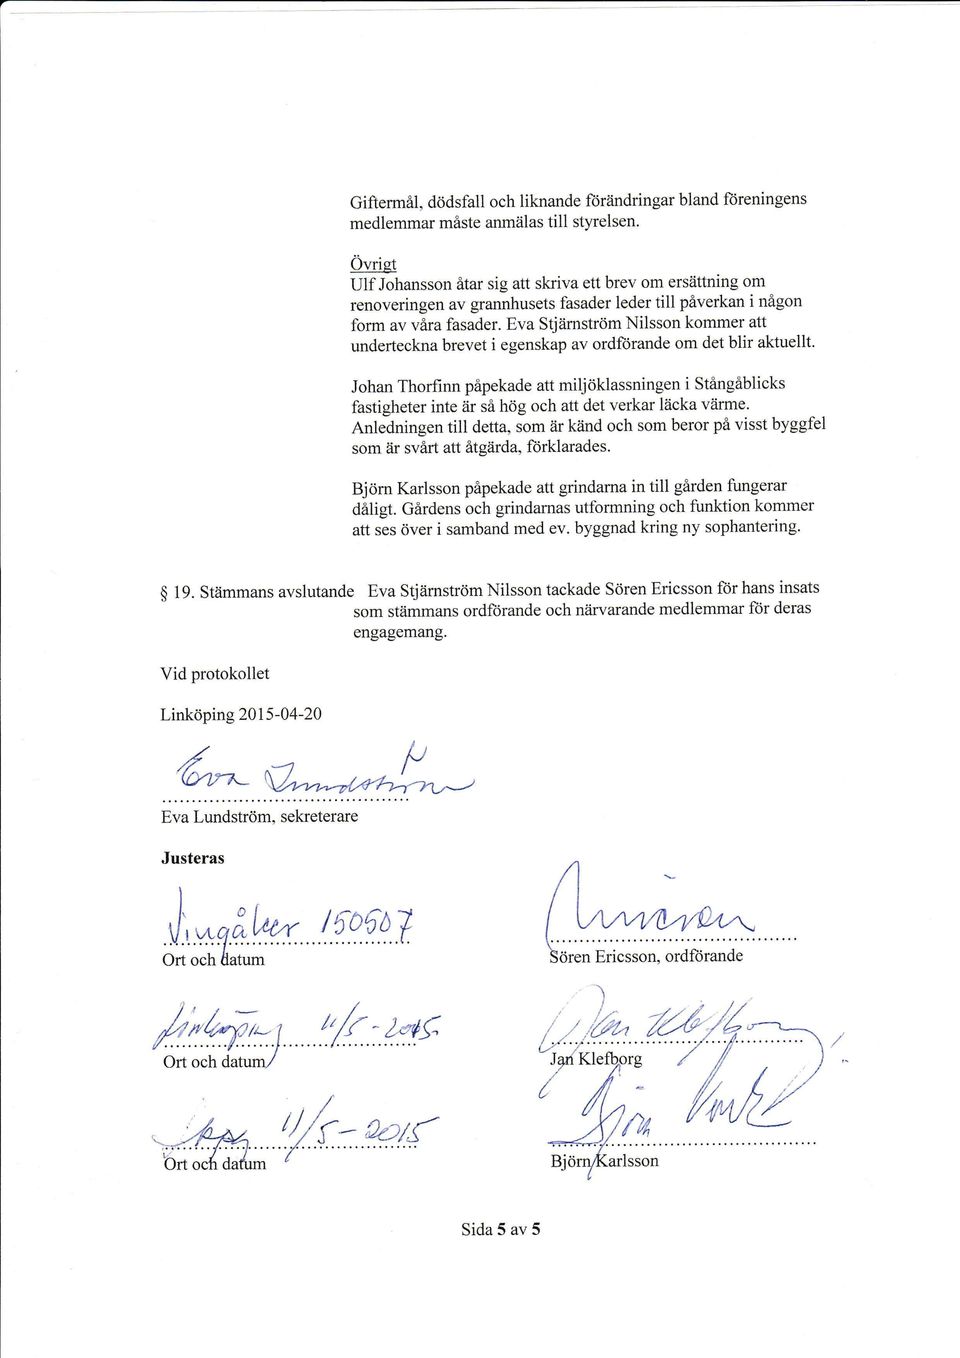 Eva Stjärnström Nilsson kommer att underteckna brevet i egenskap av ordförande om det blir aktuellt.